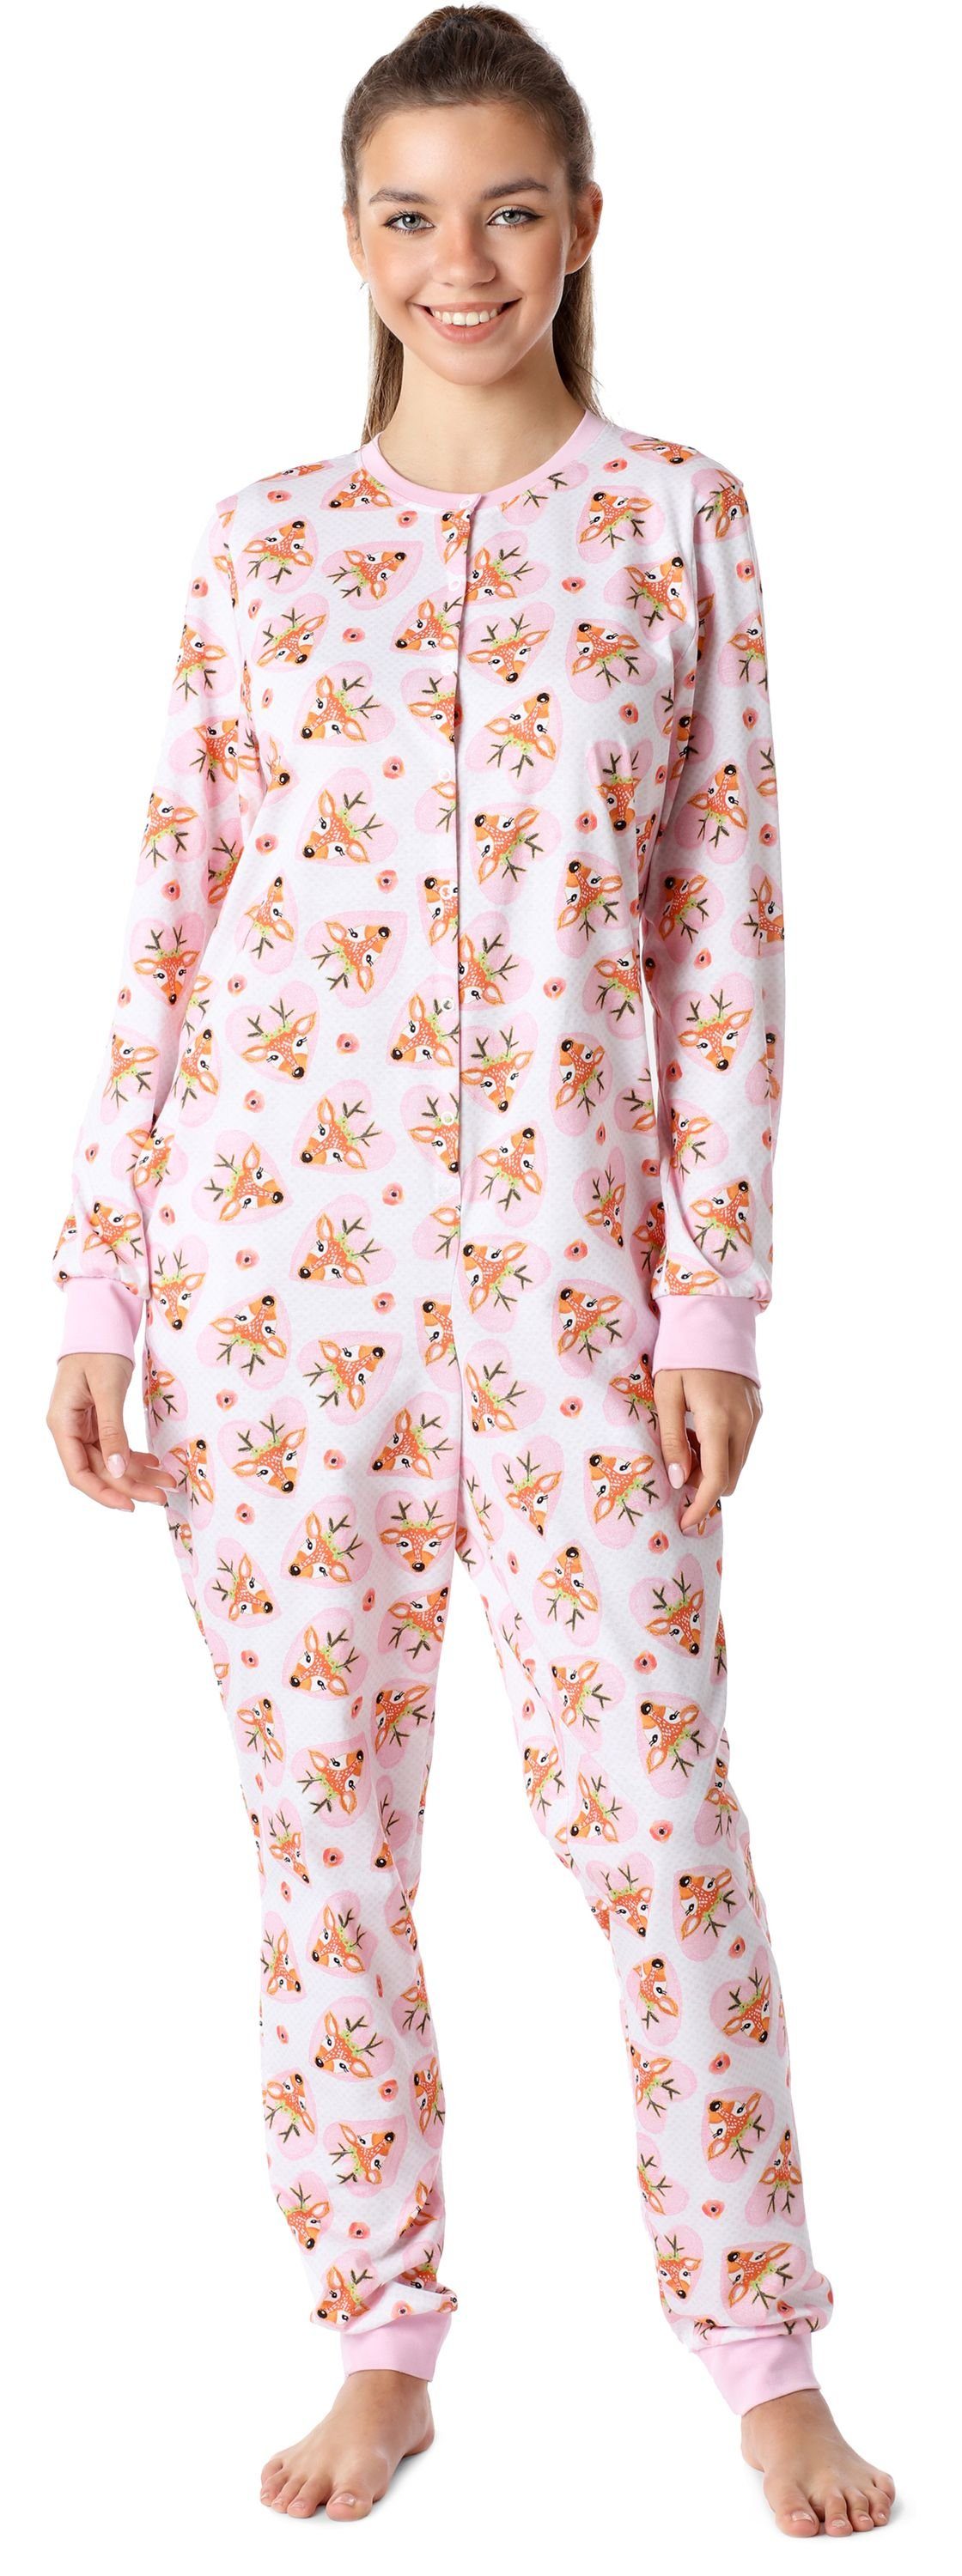 Merry Style Schlafanzug Mädchen Jugend Schlafanzug Schlafoverall MS10-335 Rosa/Herzen Hirsche | Pyjamas